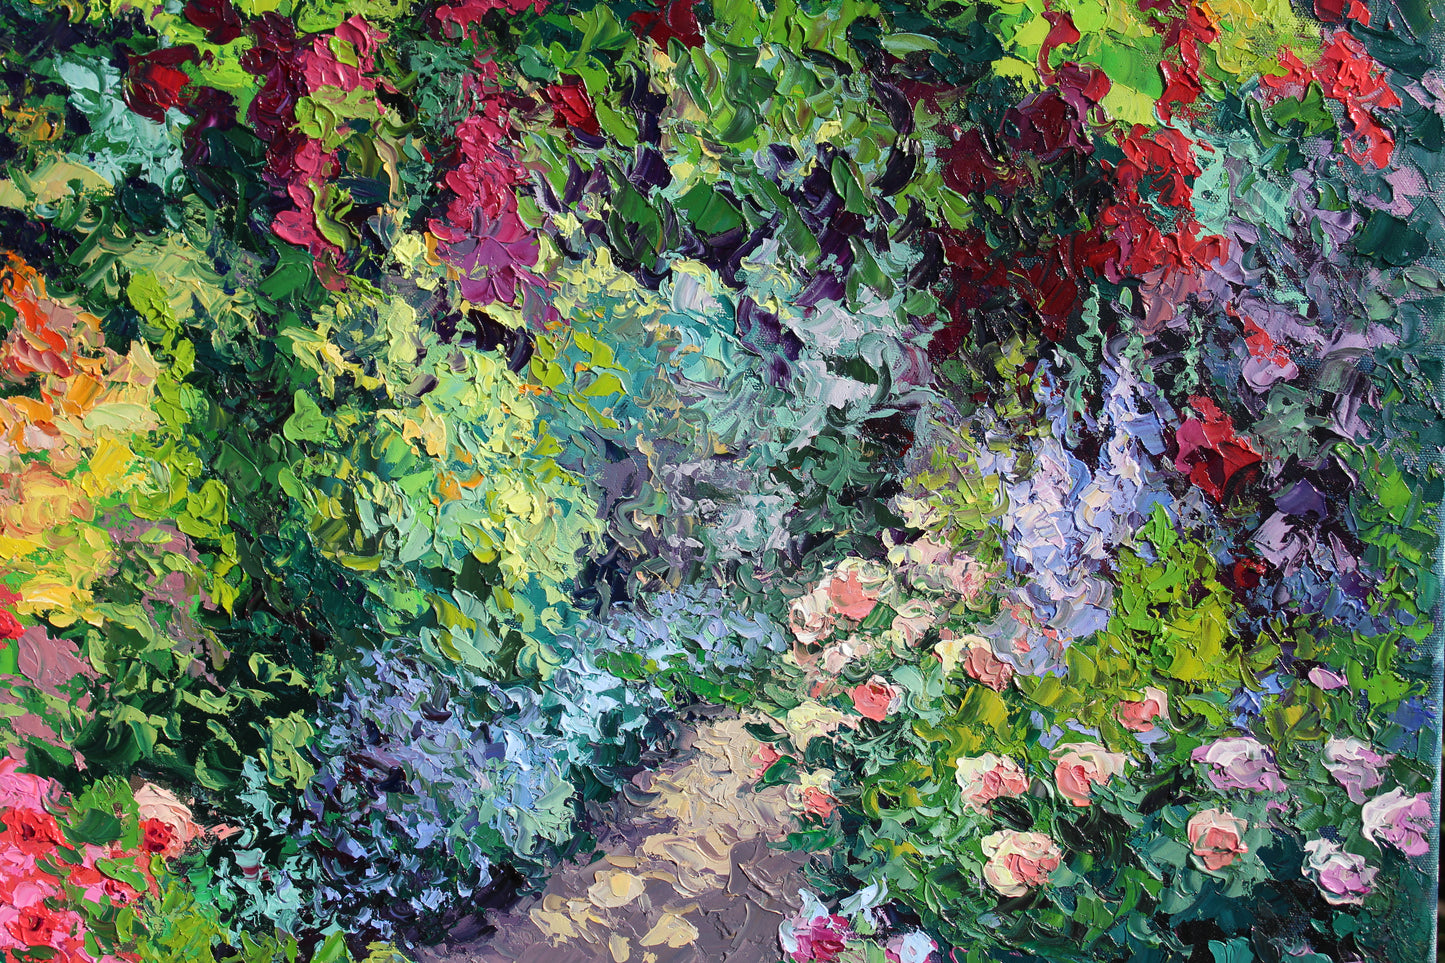 A Garden For The Queen, Original 28" x 22" Oil On Canvas